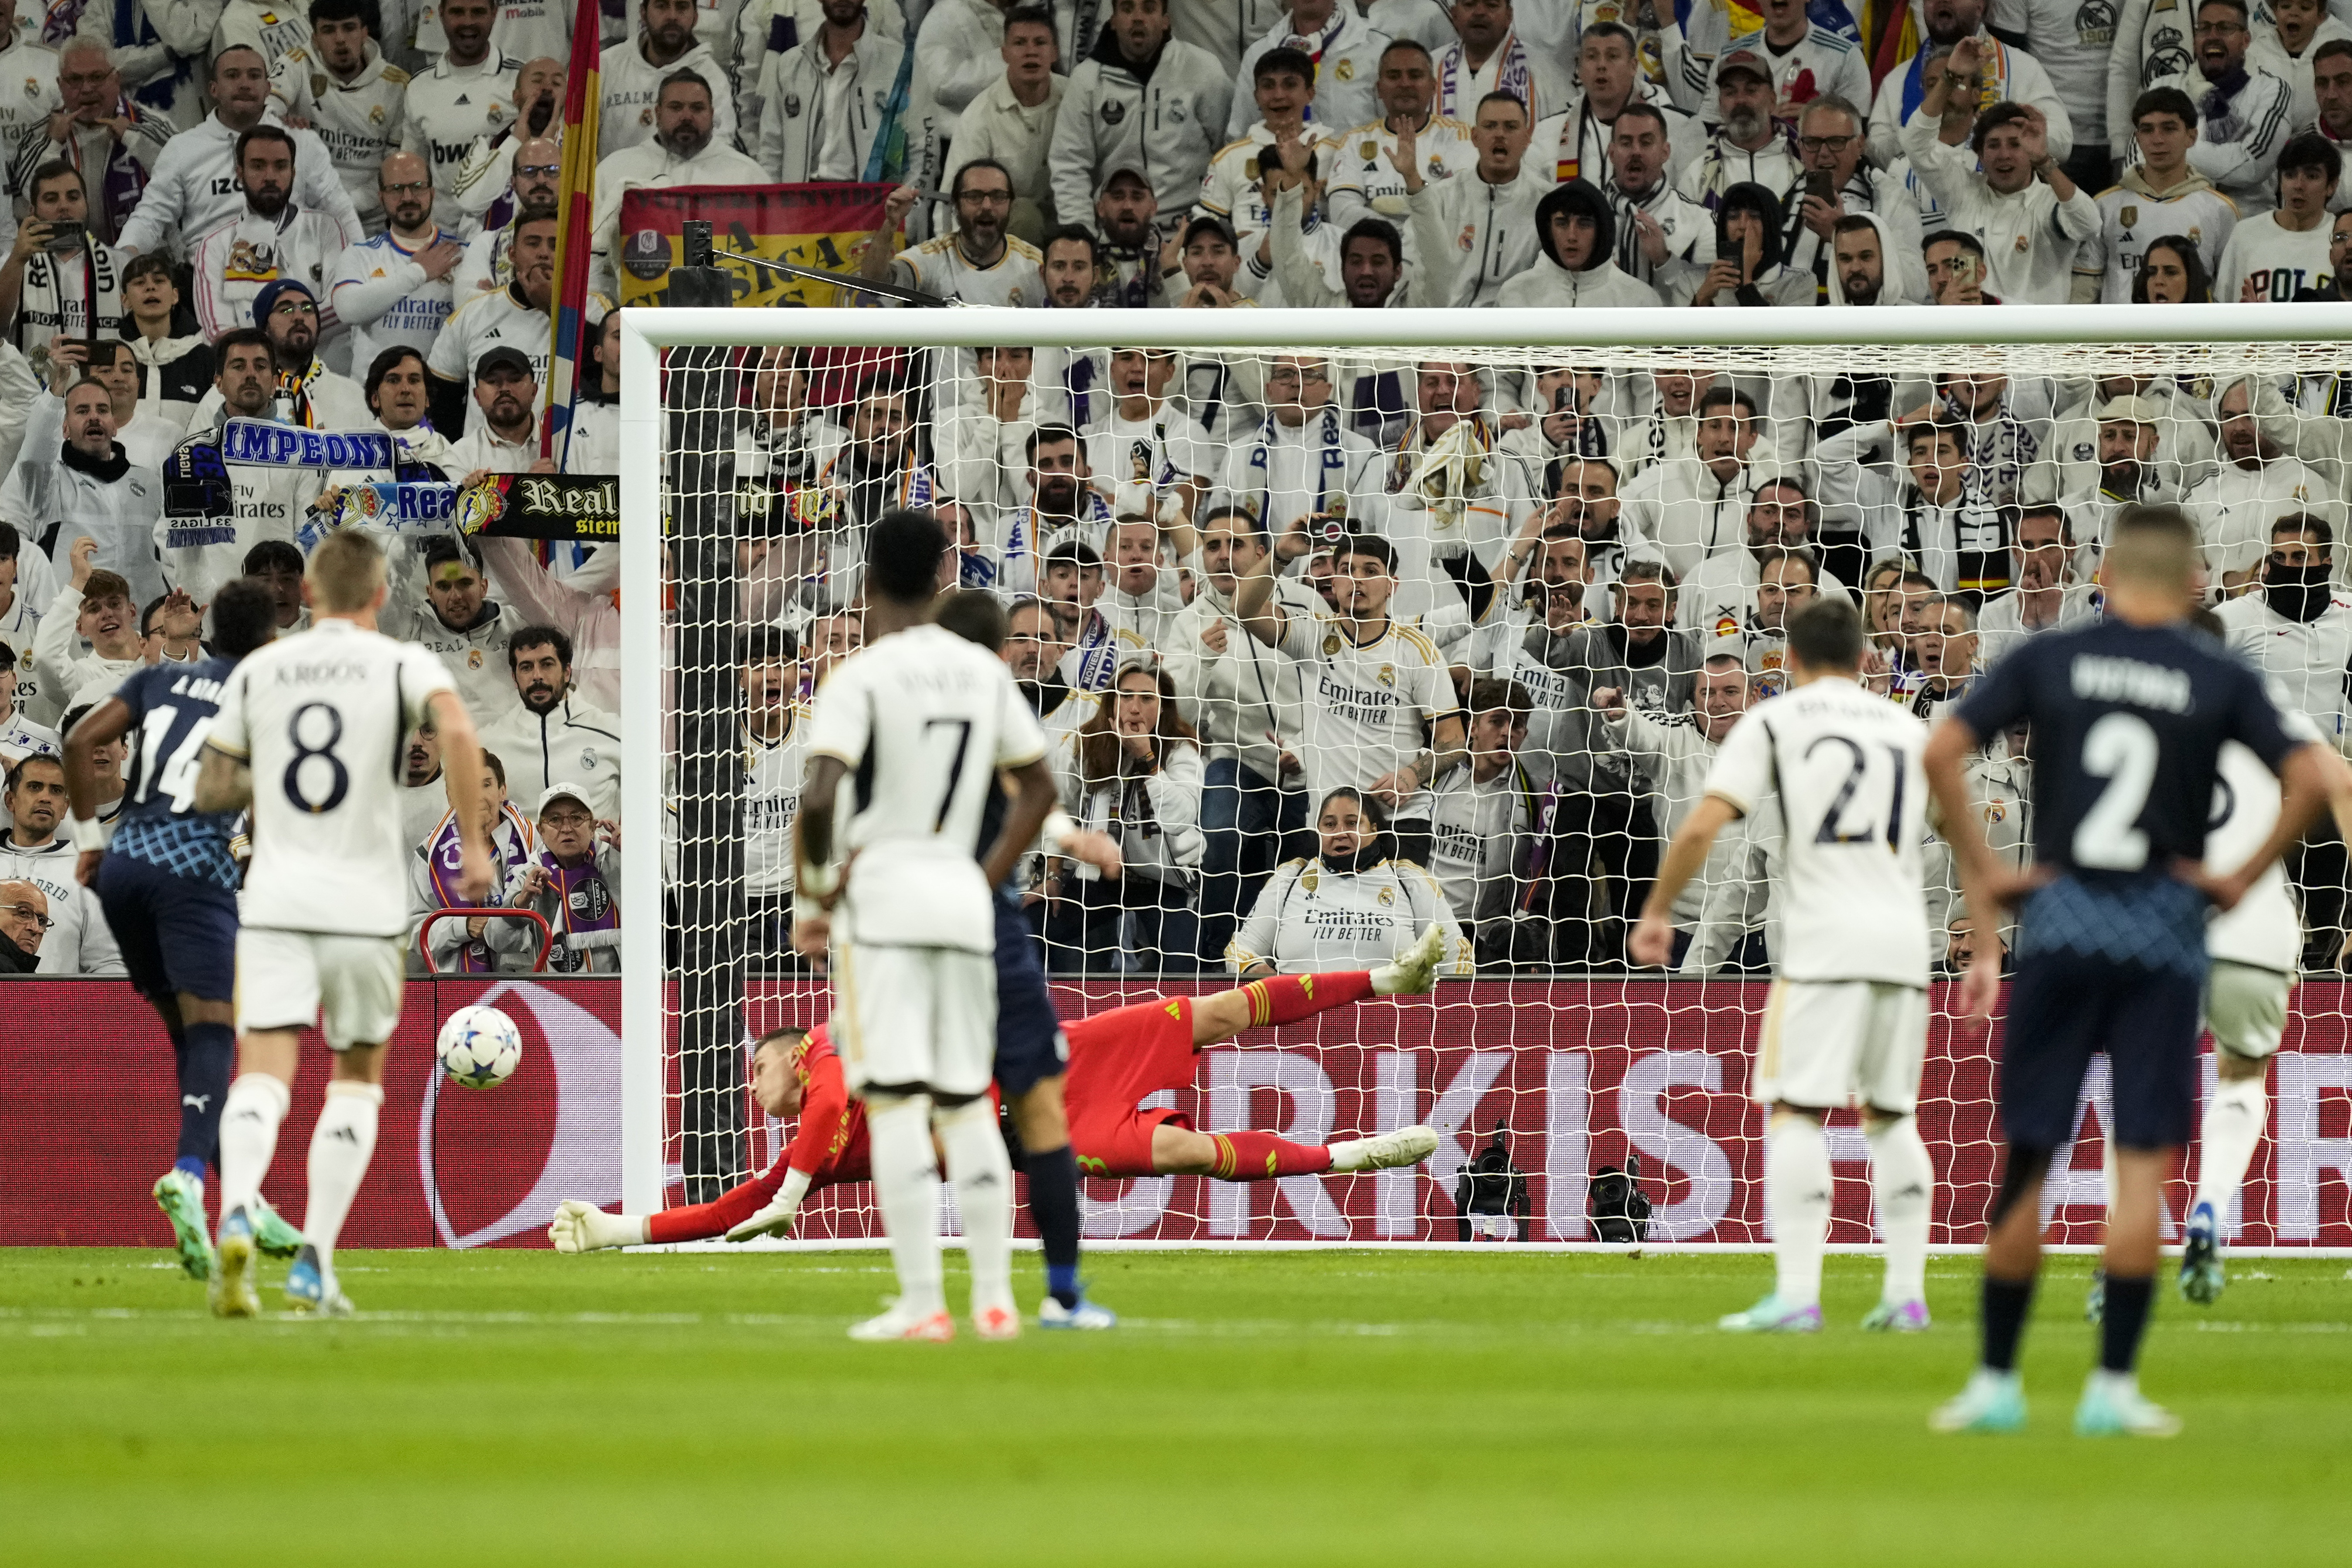 Football: La Liga suspended after Real Madrid quarantines players, Football